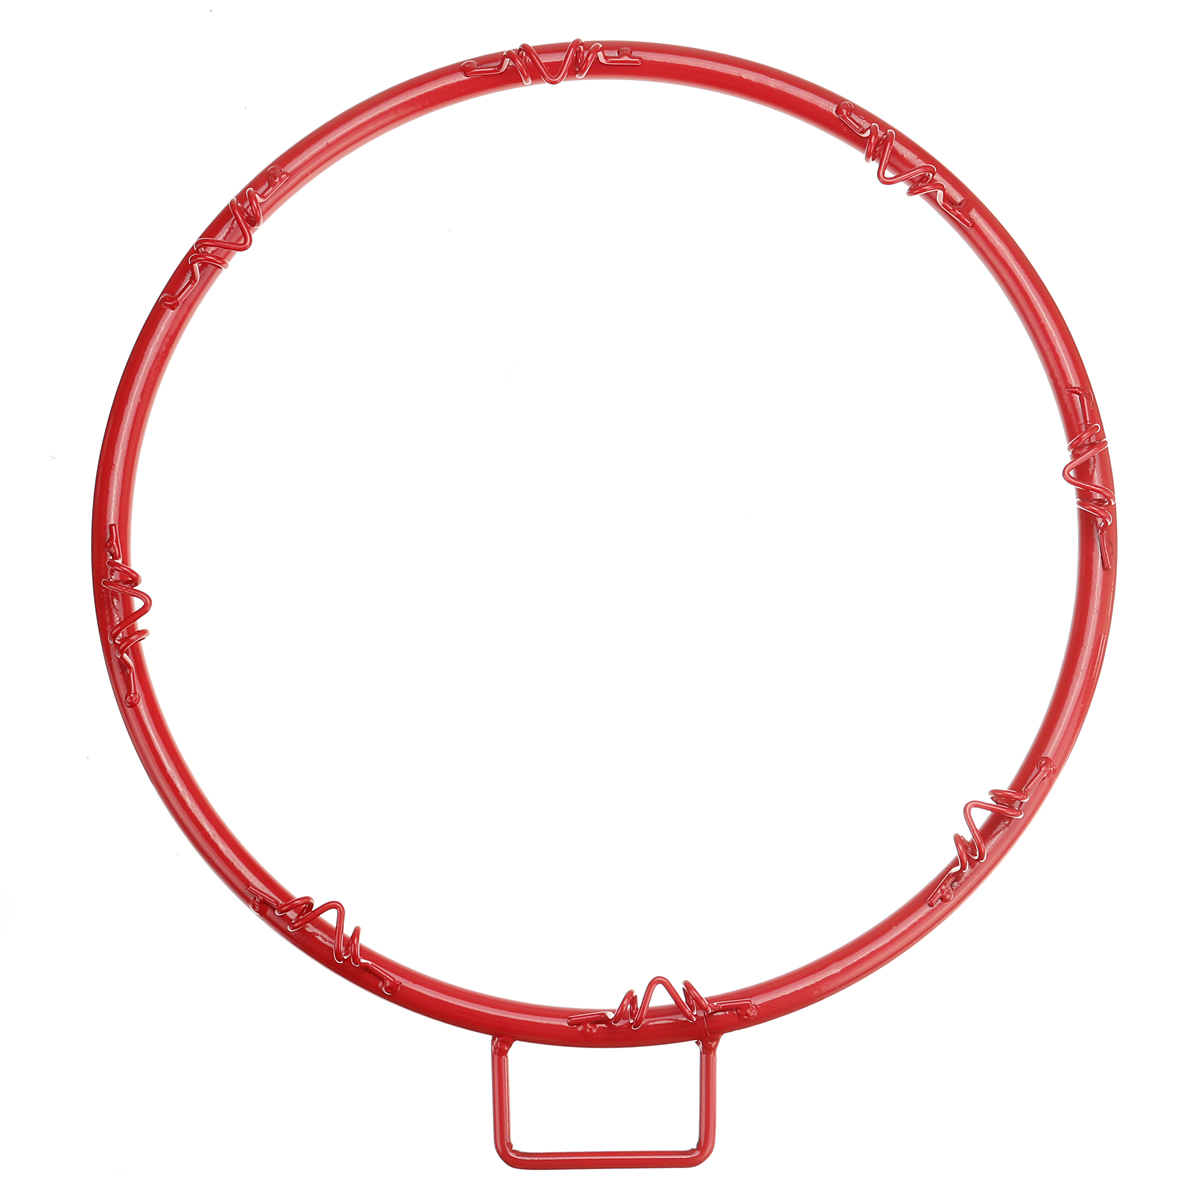 มุมมองเพิ่มเติมของสินค้า Basketball Hoop ห่วงบาสเกตบอล แขวนติดผนังขอบโลหะ ขนาด 45 Cm รุ่น ห่วงบาสเกตบอลแขวนติดผนังขอบโลหะเป้าหมายกำไรสุทธิสินค้ากีฬา 45ซม Basketball Hoop โครงโลหะติดผนัง(รวมเฉพาะขอบและสุทธิ)